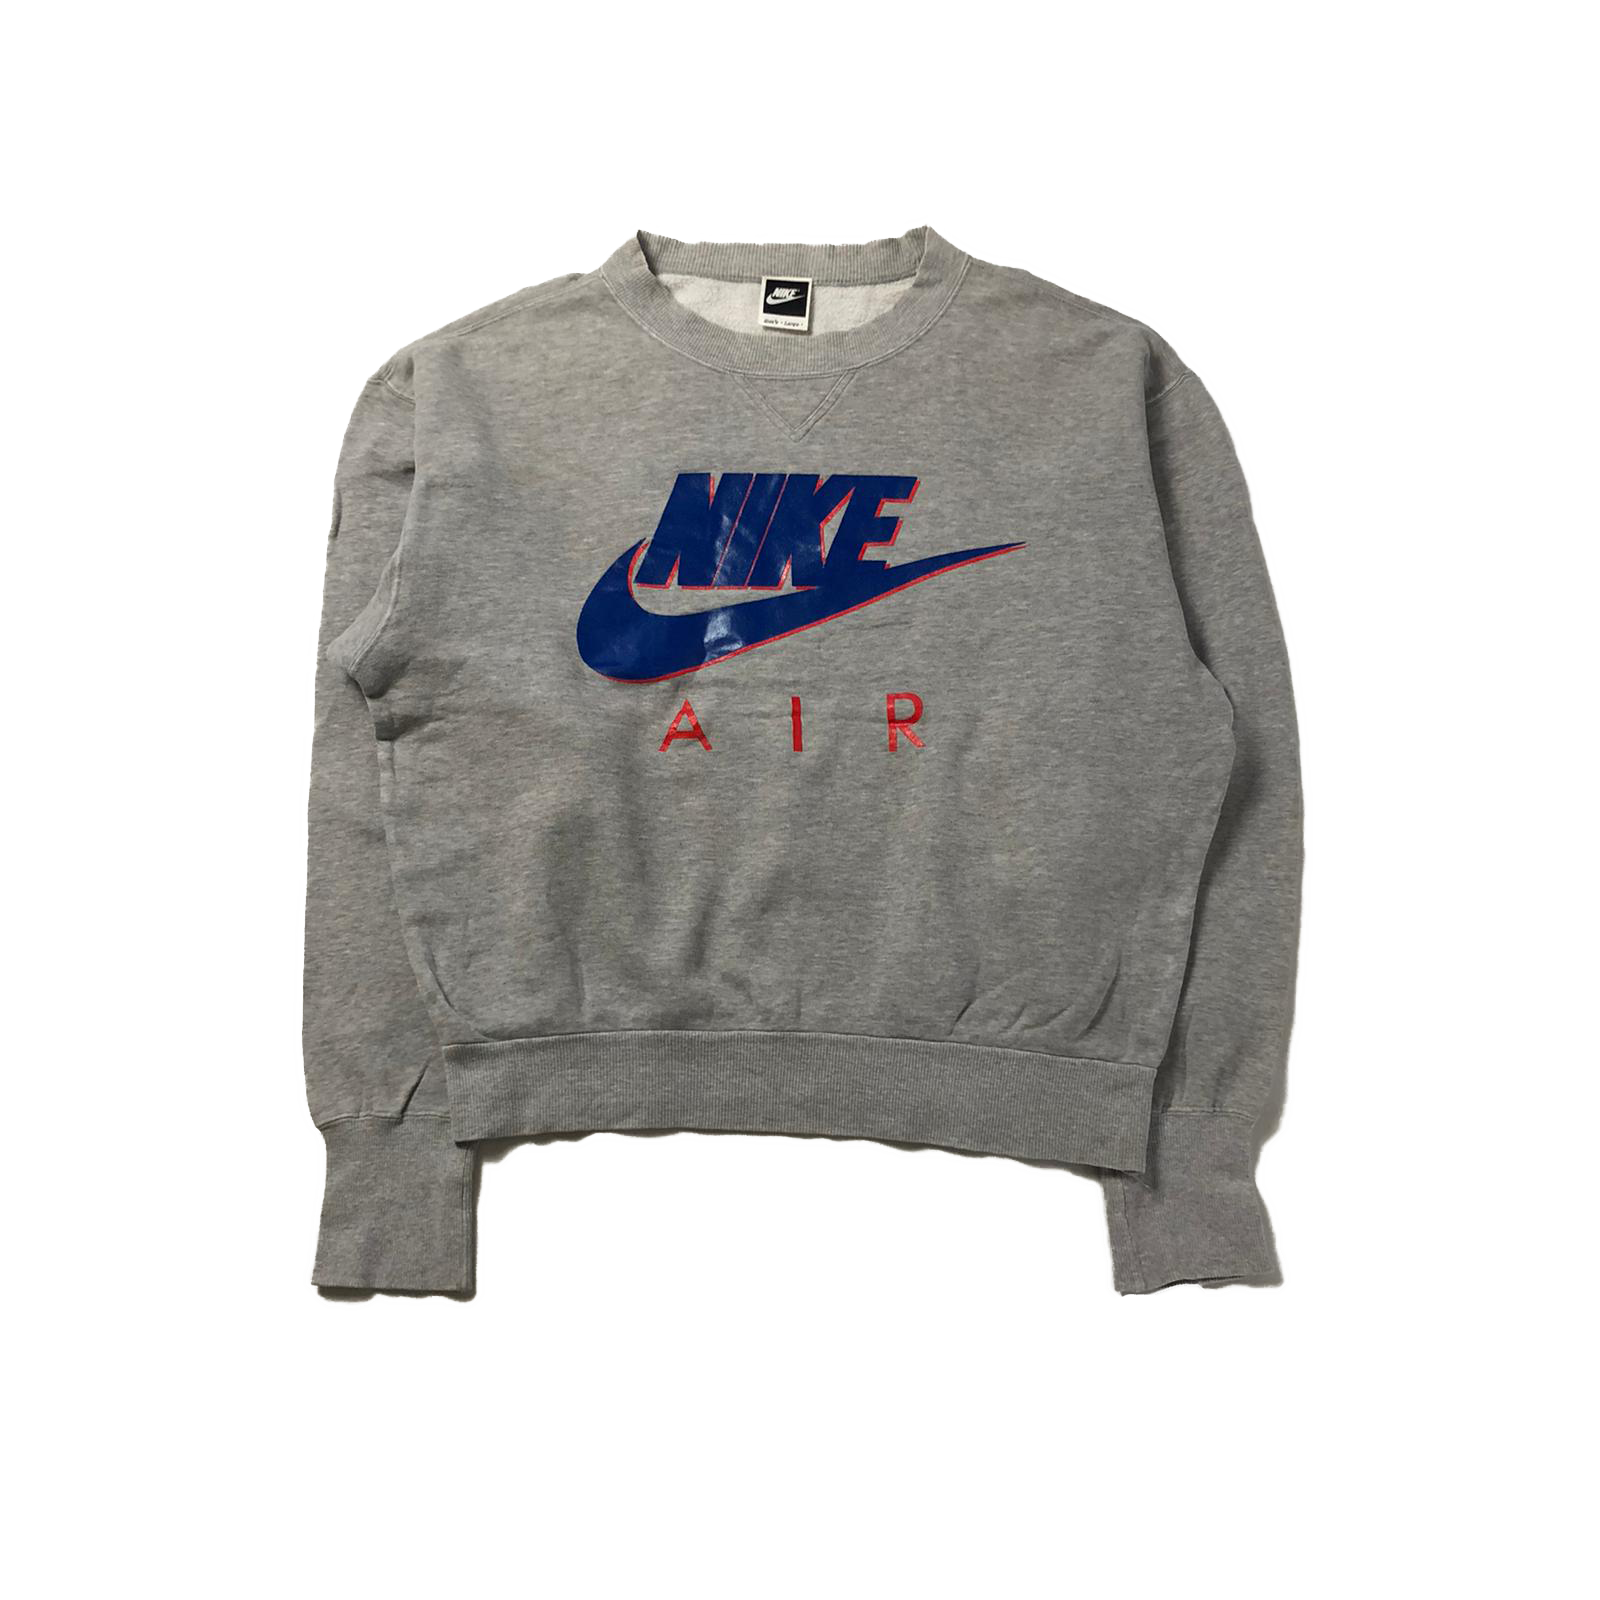 90's Nike AIR sweatshirt